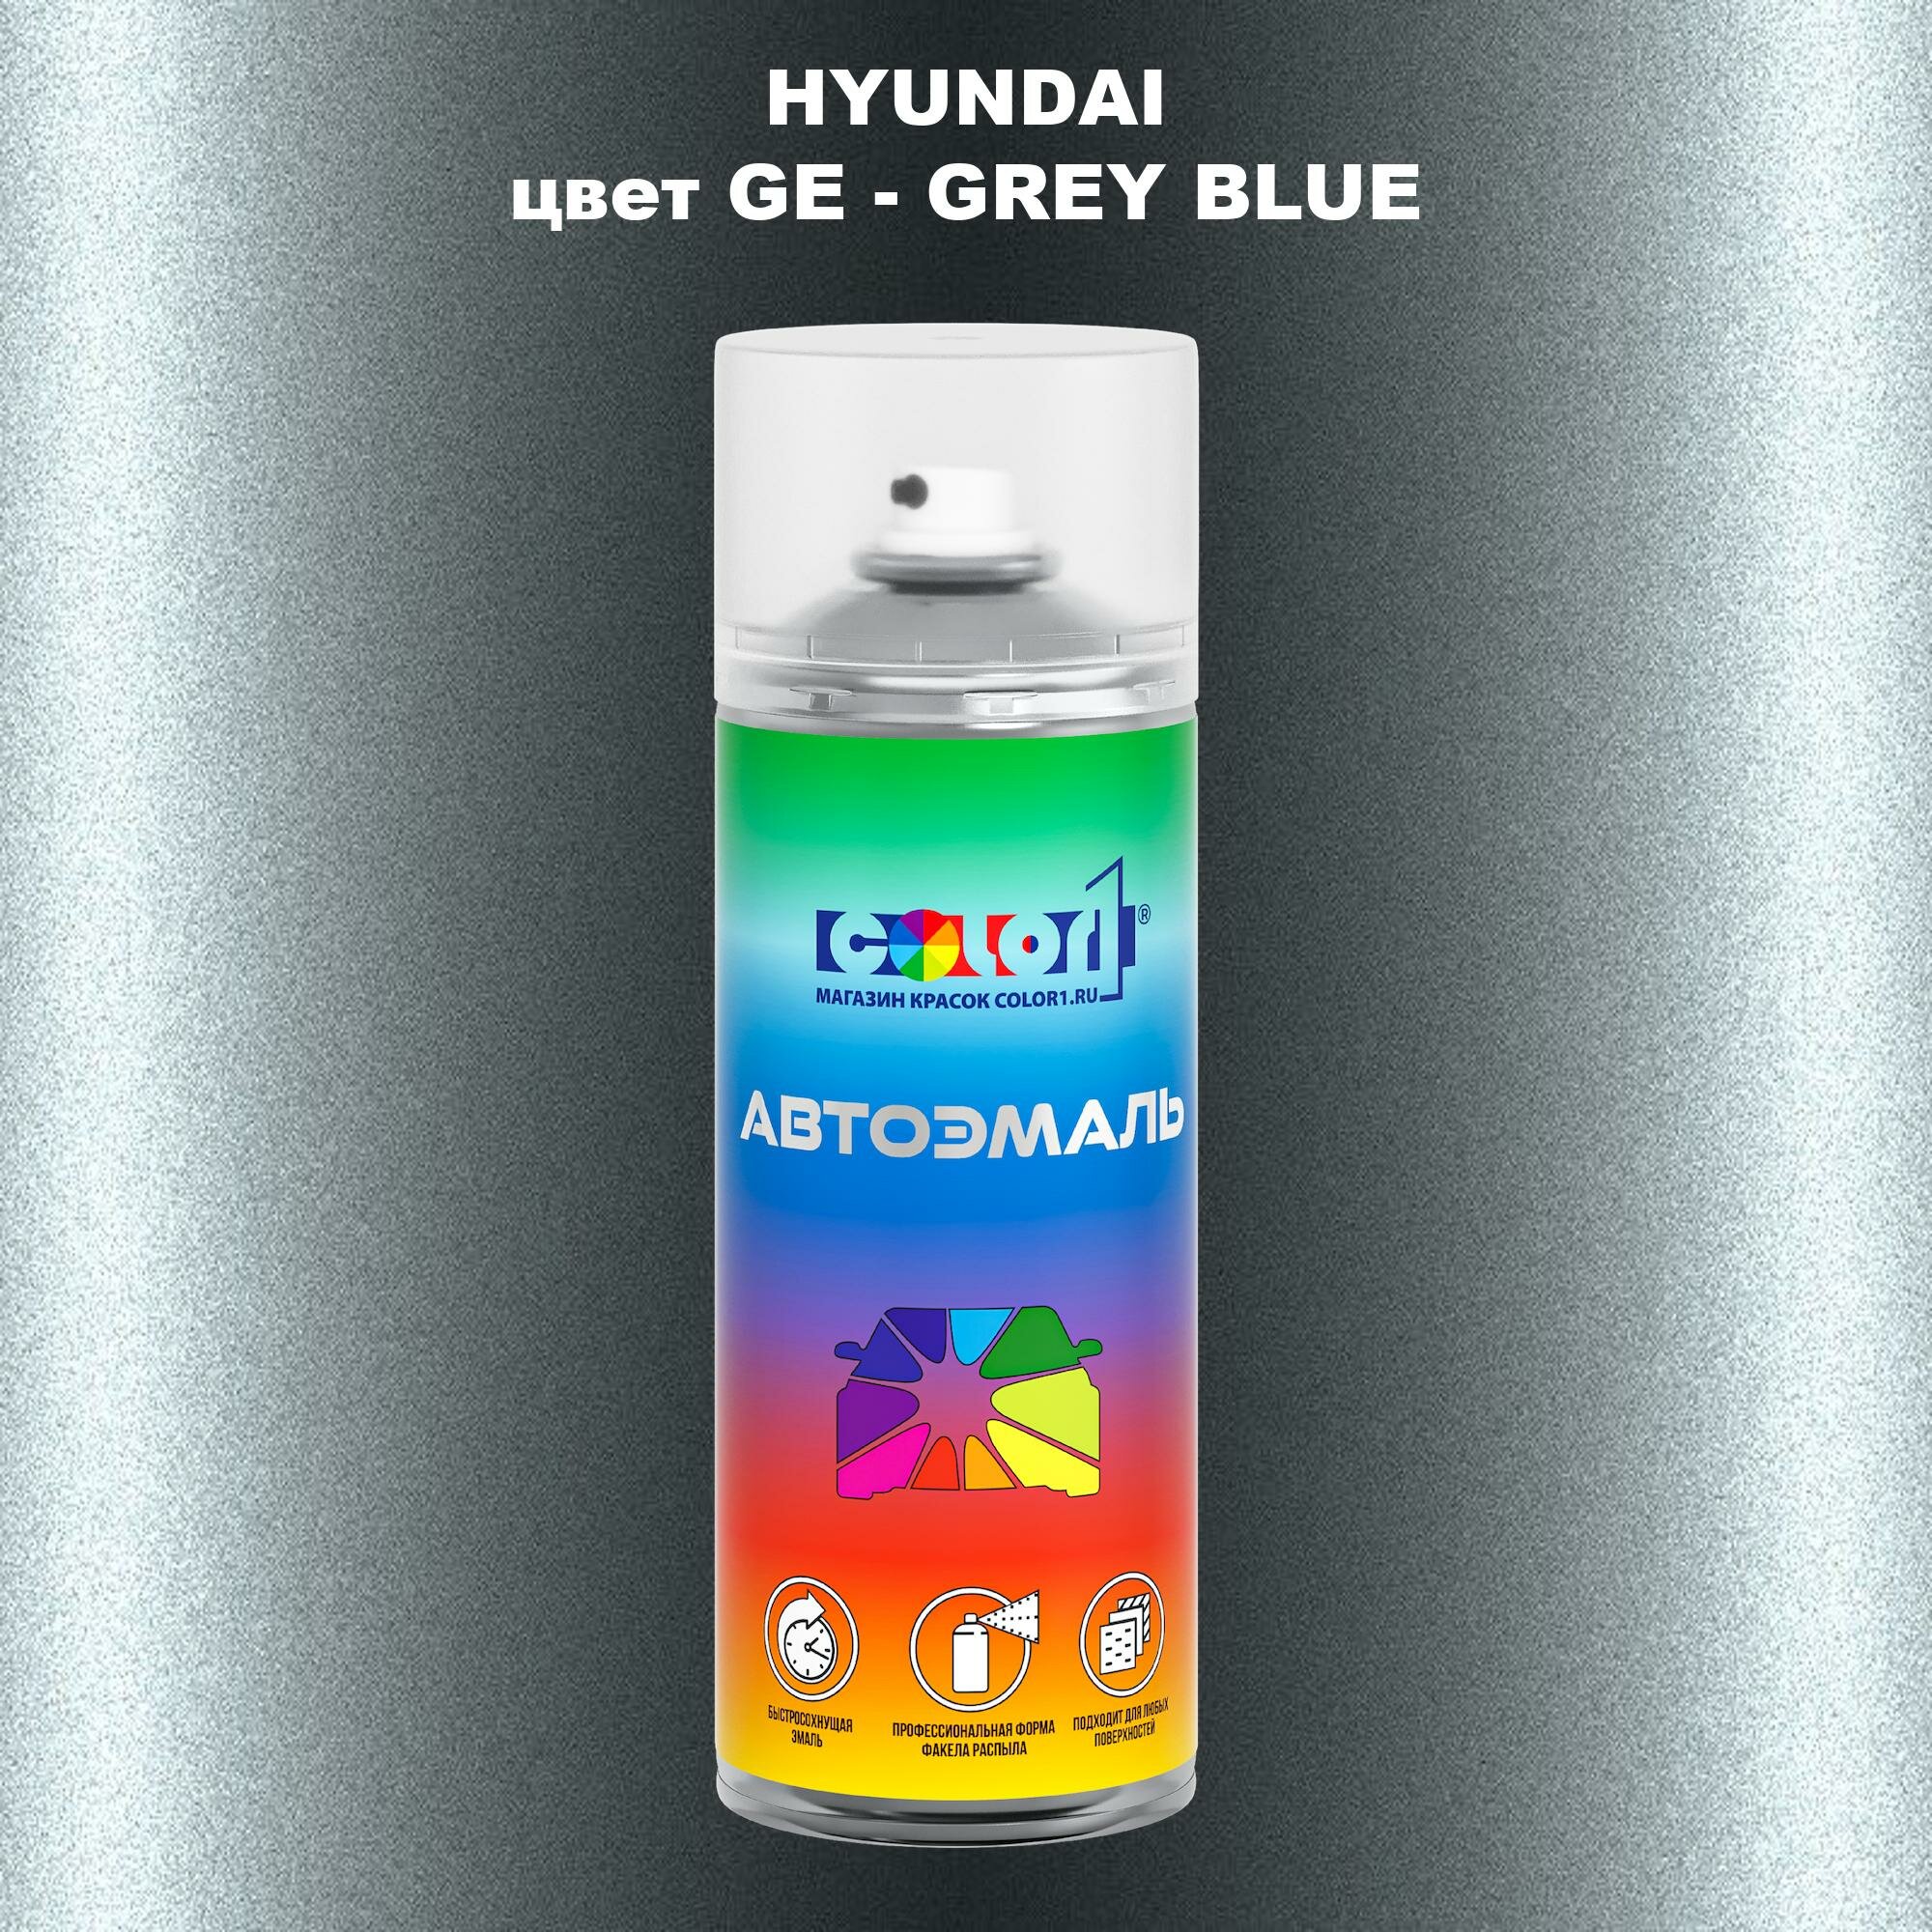 Аэрозольная краска COLOR1 для HYUNDAI, цвет GE - GREY BLUE